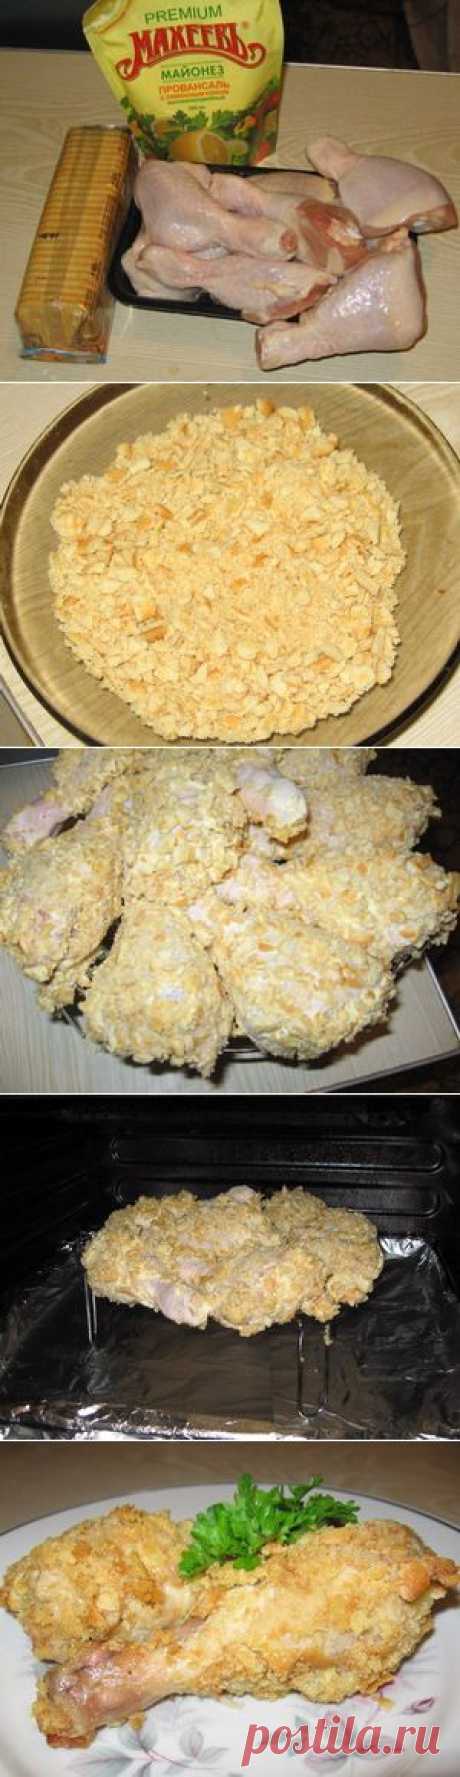 Пошаговый фото-рецепт курицы в печенье